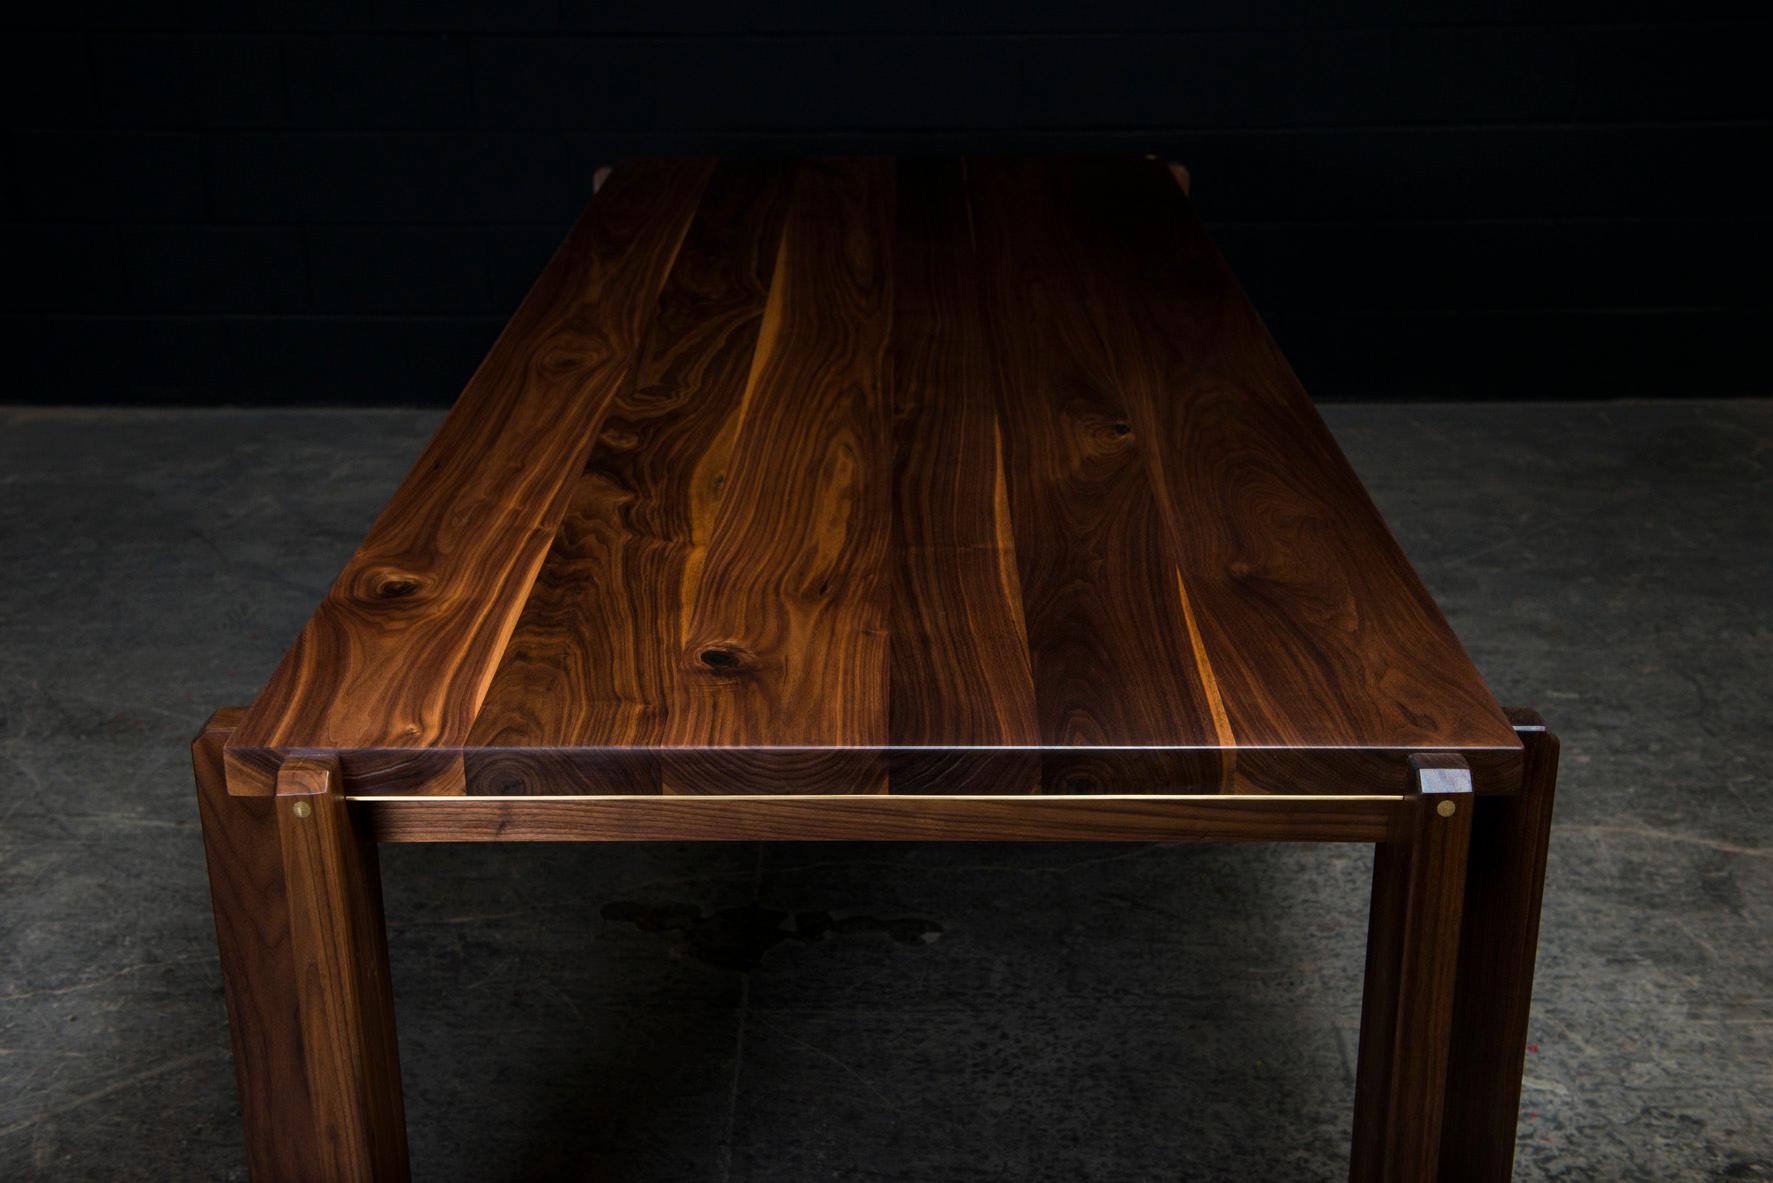 La Castelgar est une élégante table de salle à manger contemporaine fabriquée à la main sur commande à partir de bois dur américain massif sélectionné à la main, avec de subtils détails d'incrustation en laiton poli à la main. Les piliers en bois